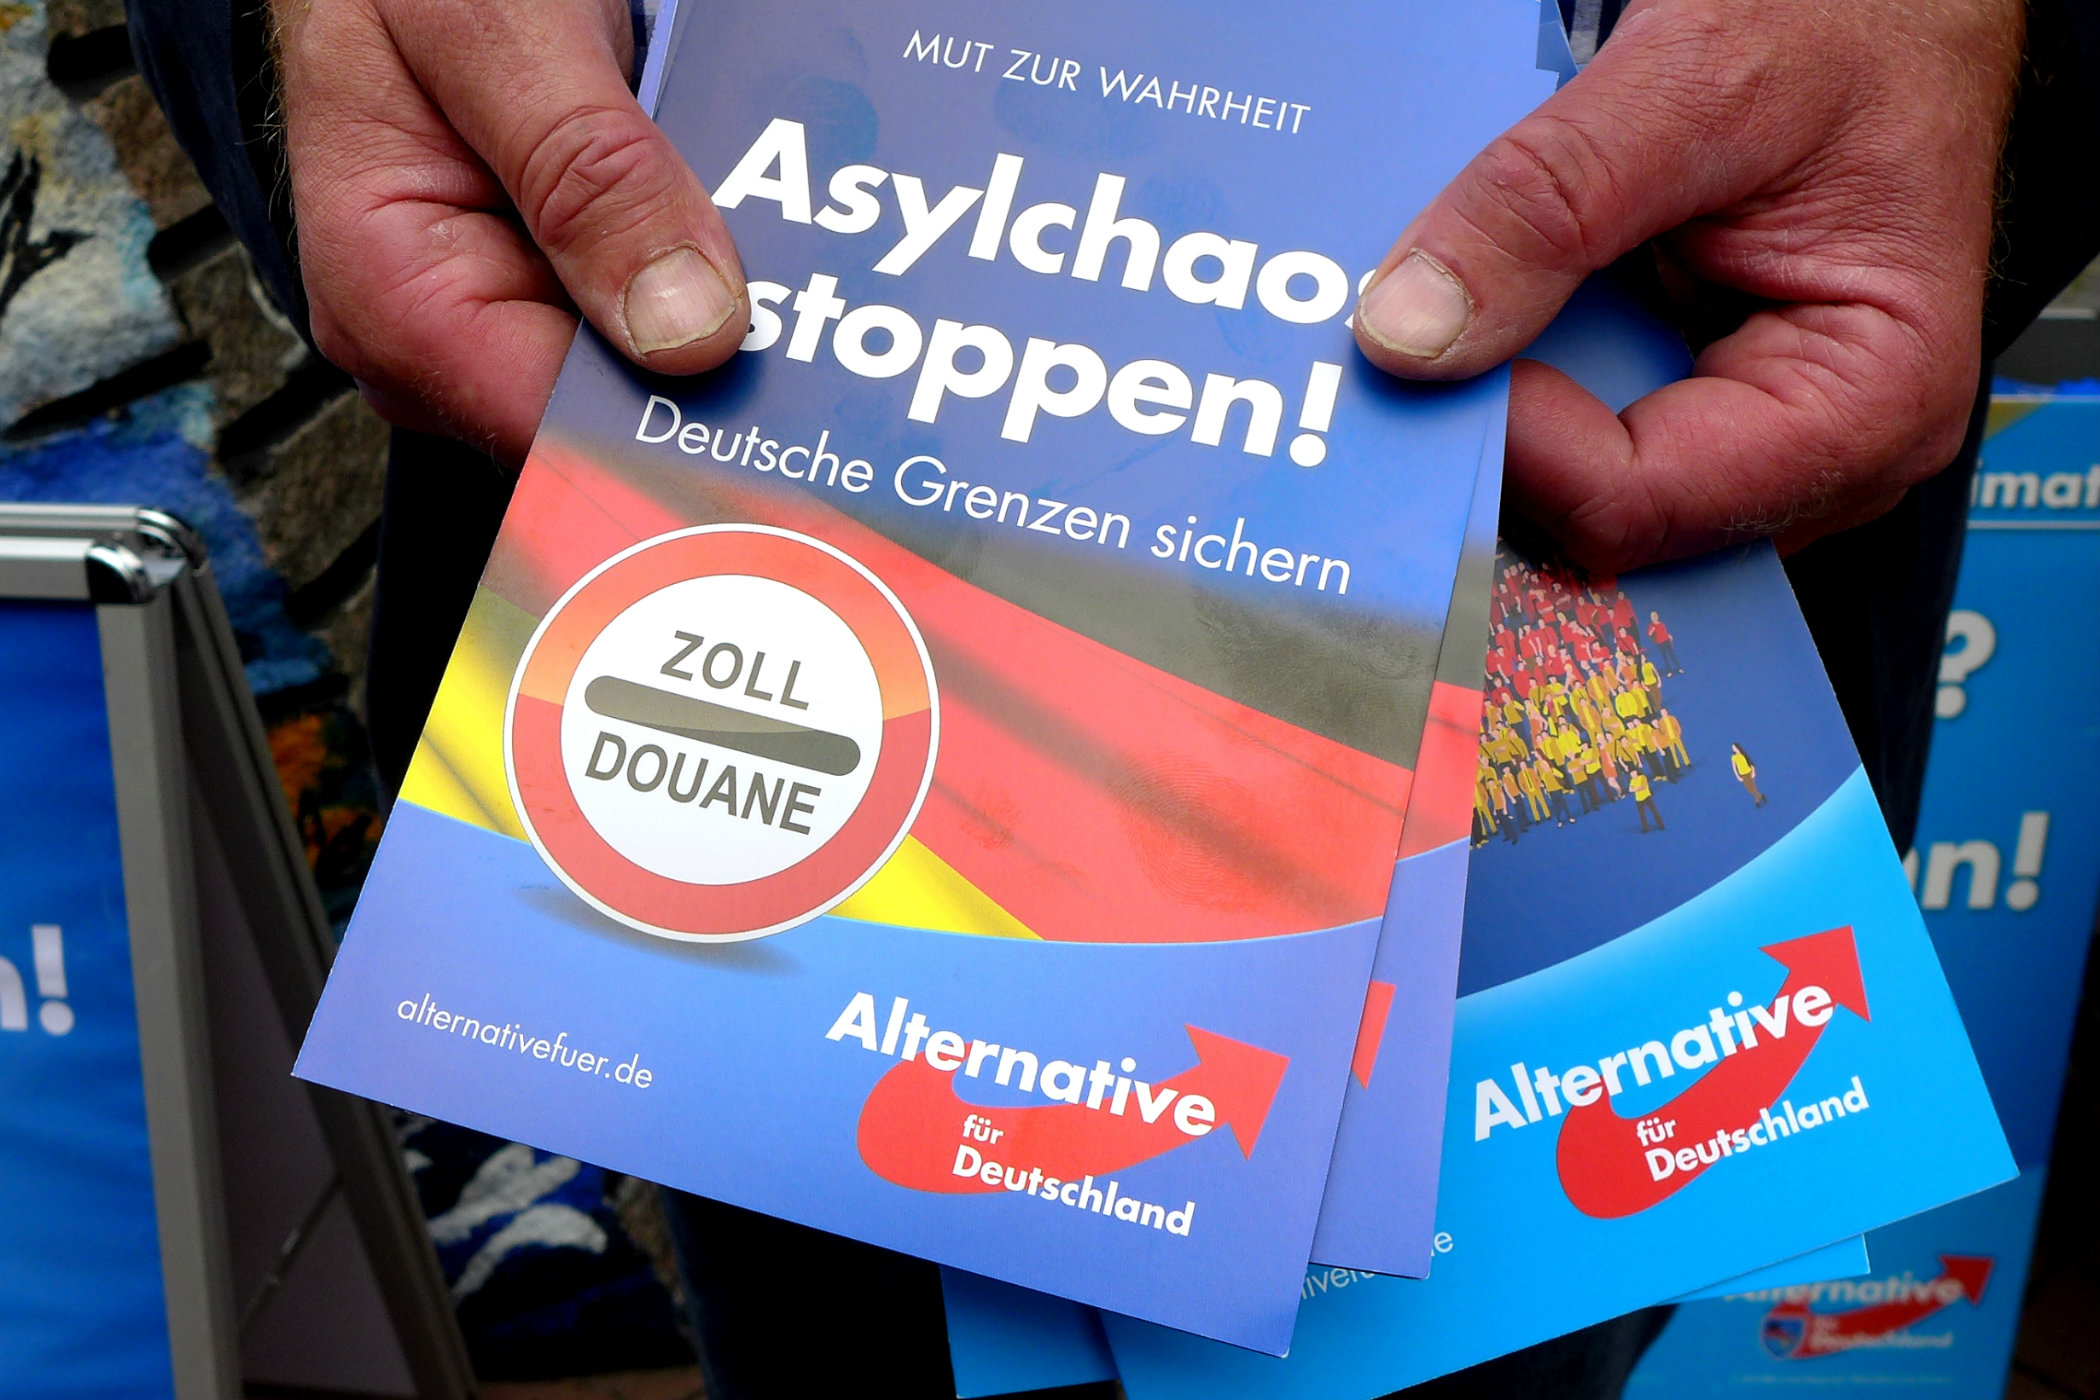 Protiimigrační letáky Alternativy pro Německo (AfD)